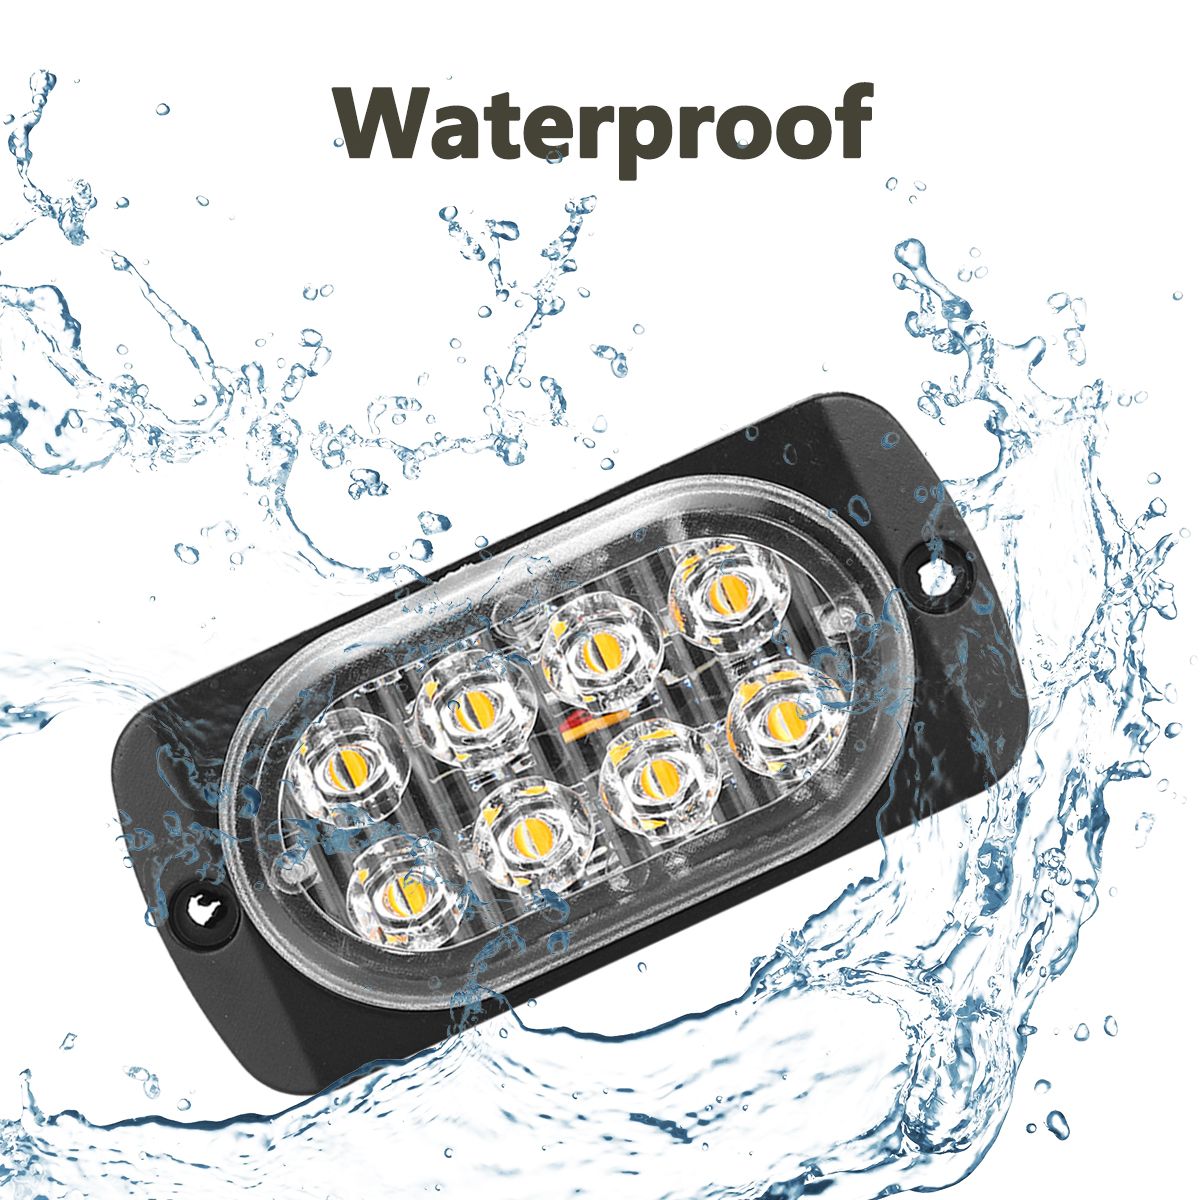 18-Flash-Modes-LED-Side-Marker-Lights-IP67-Waterproof-1PCS-for-Trailer-Truck-Caravans-Utes-Boat-1555228